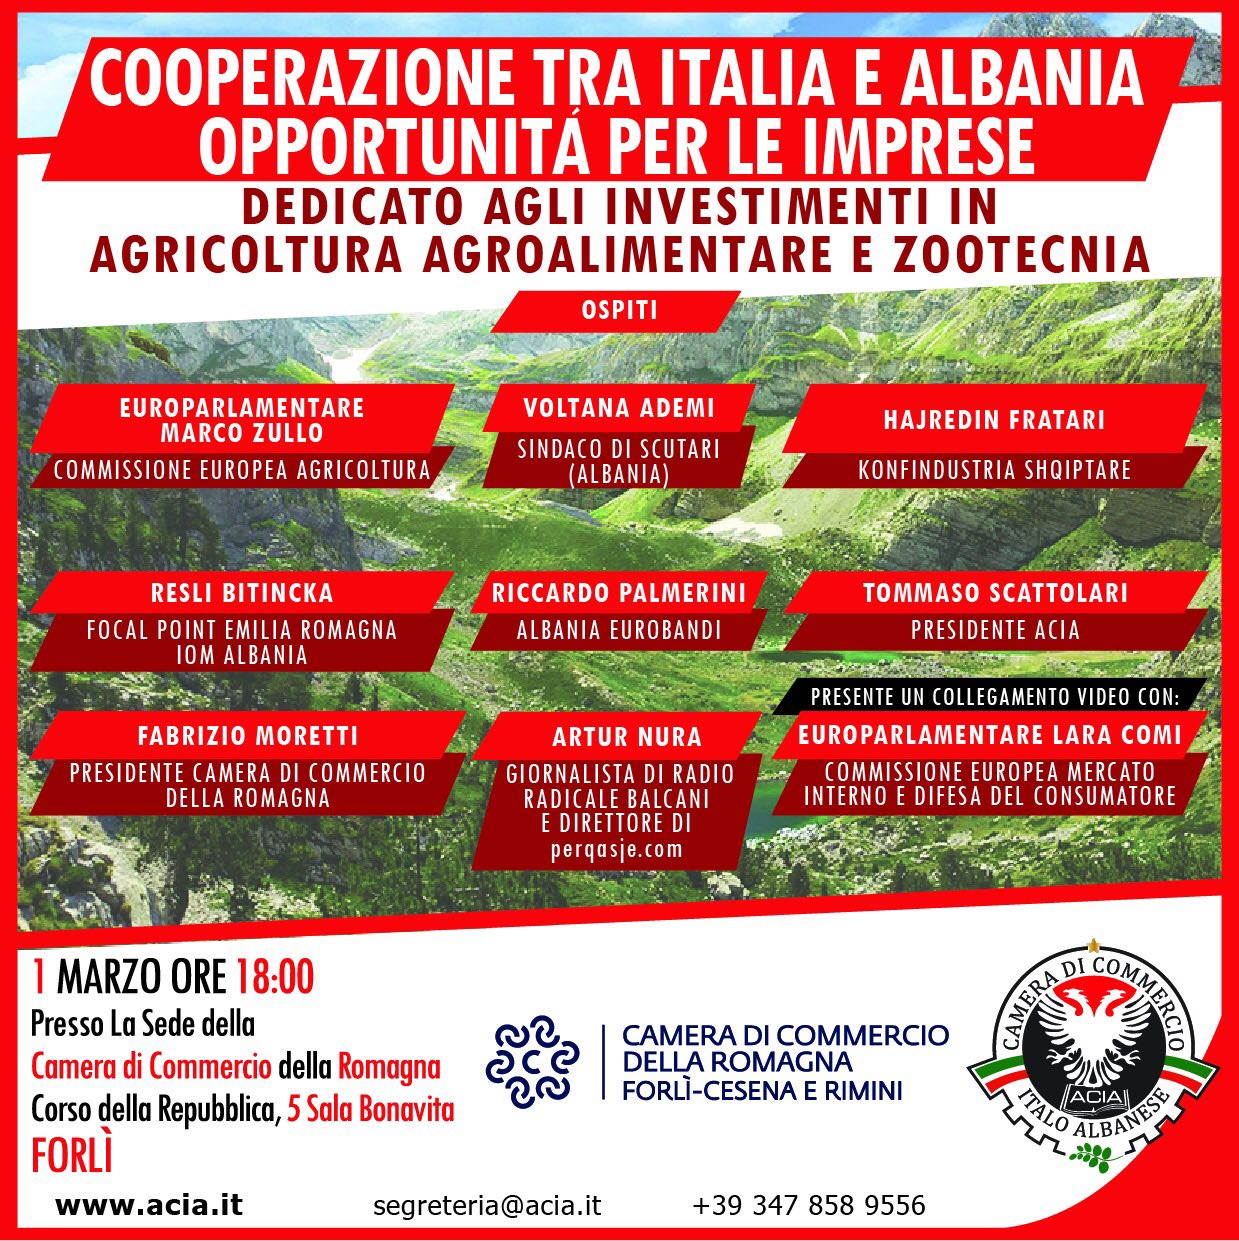 Cooperazione tra Italia e Albania - Opportunità per le imprese @ Camera di Commercio della Romagna Forlì-Cesena e Rimini, Sala Bonavita